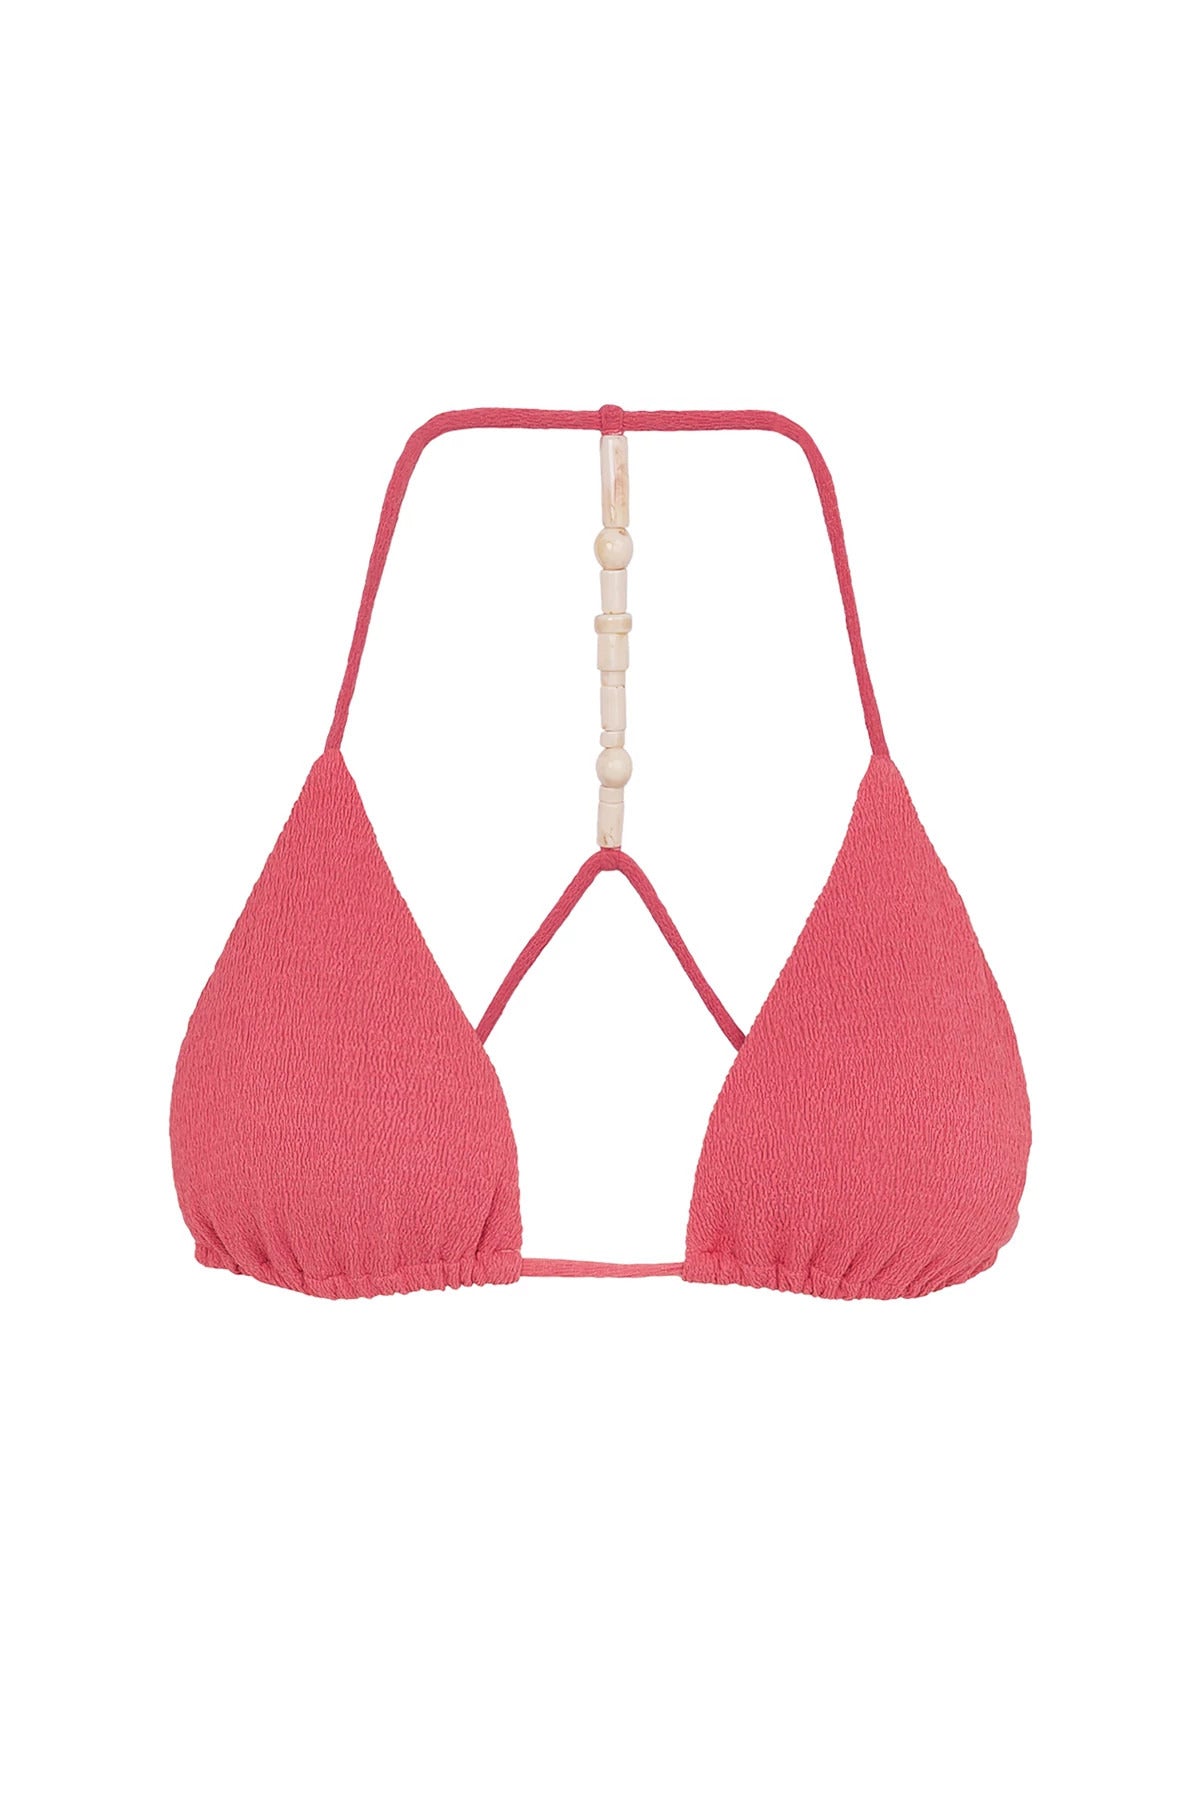 Vix Swimwear Women's Zene Triangle Bikini Top